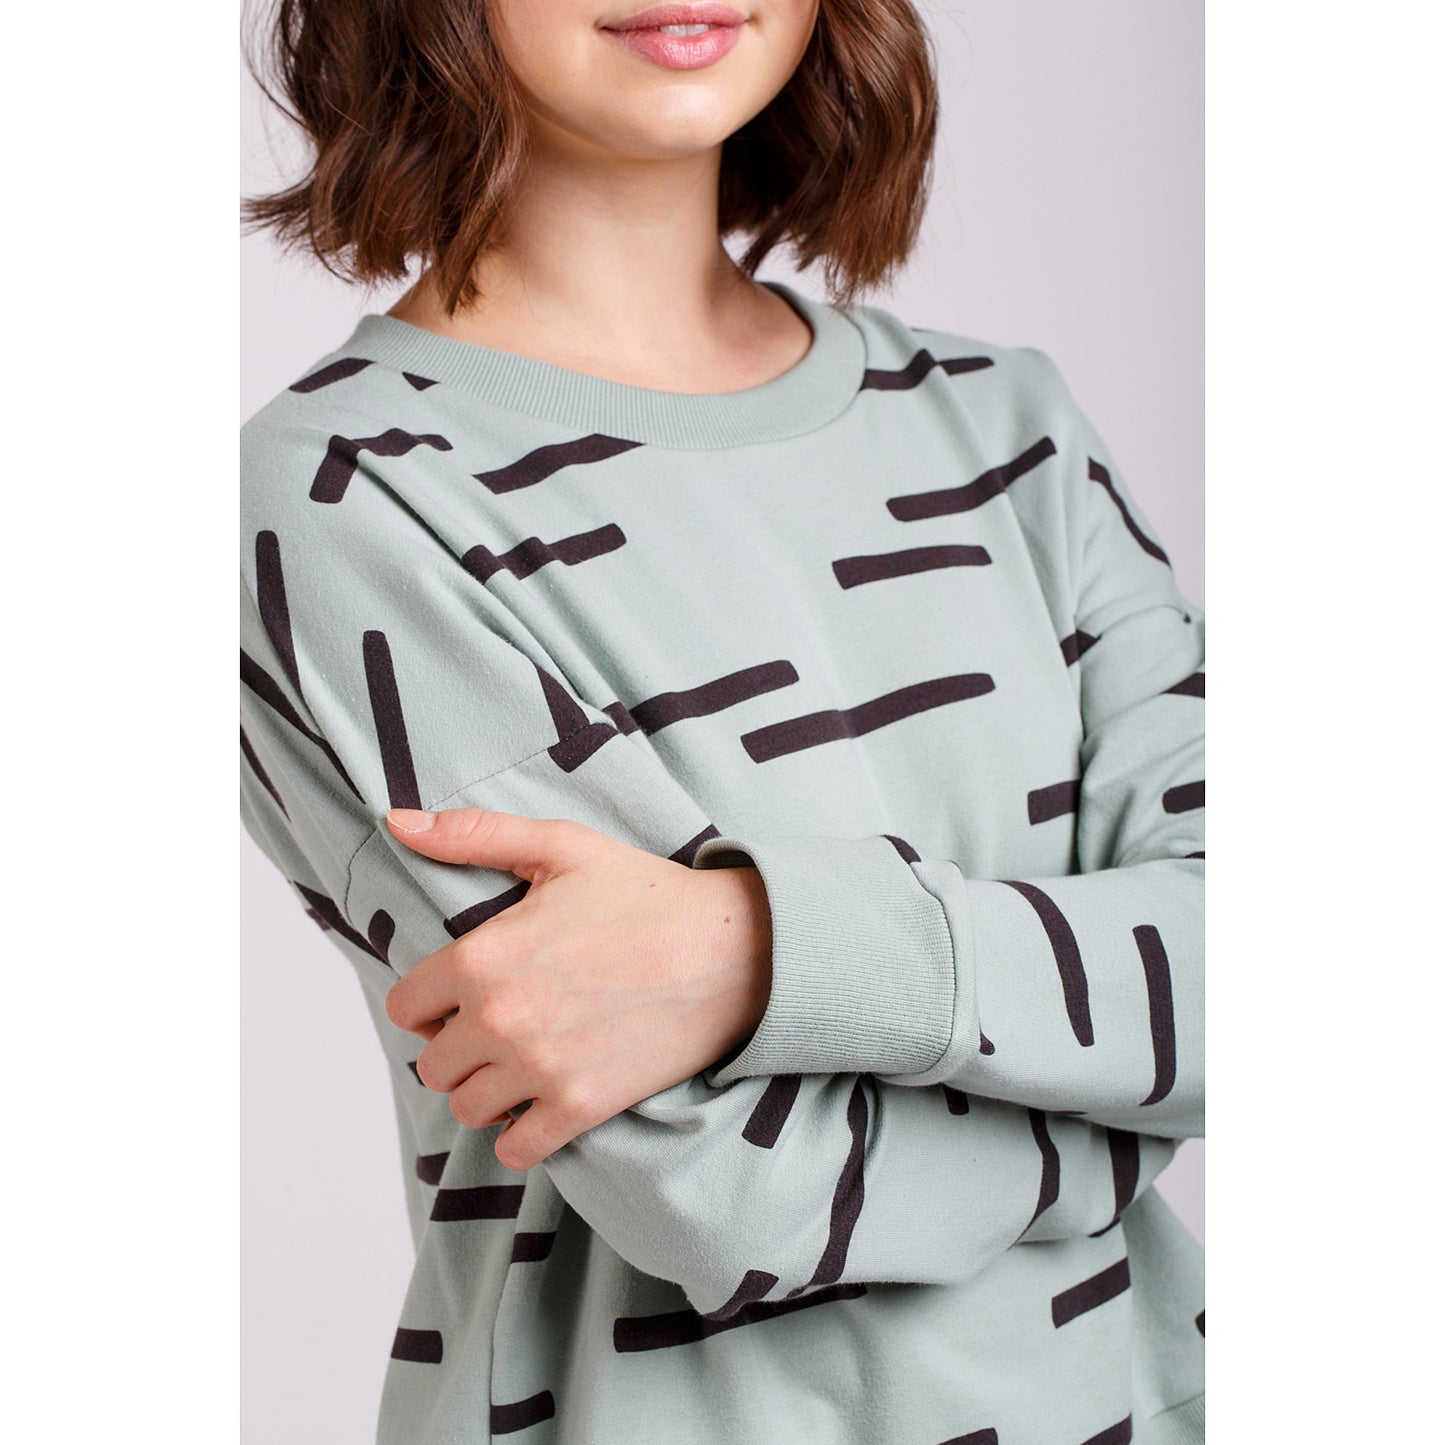 Jarrah Sweater Sewing Pattern - Megan Nielsen Patterns